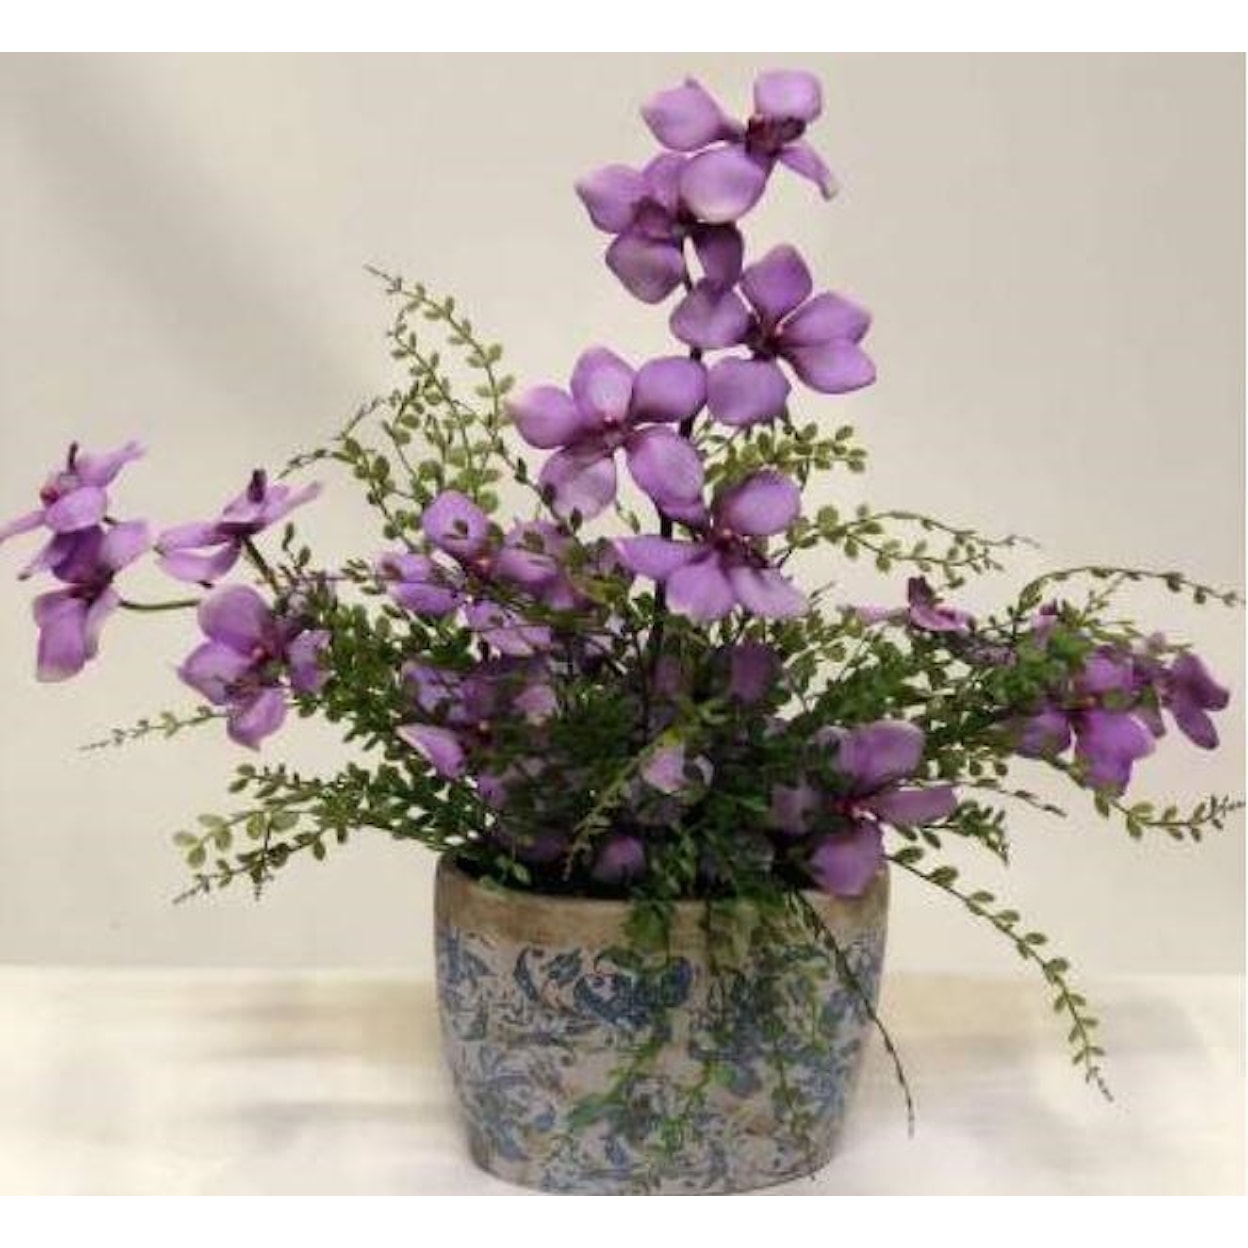 D&W Silks Floral100120 Purple Vanda Orchids Mini Fern